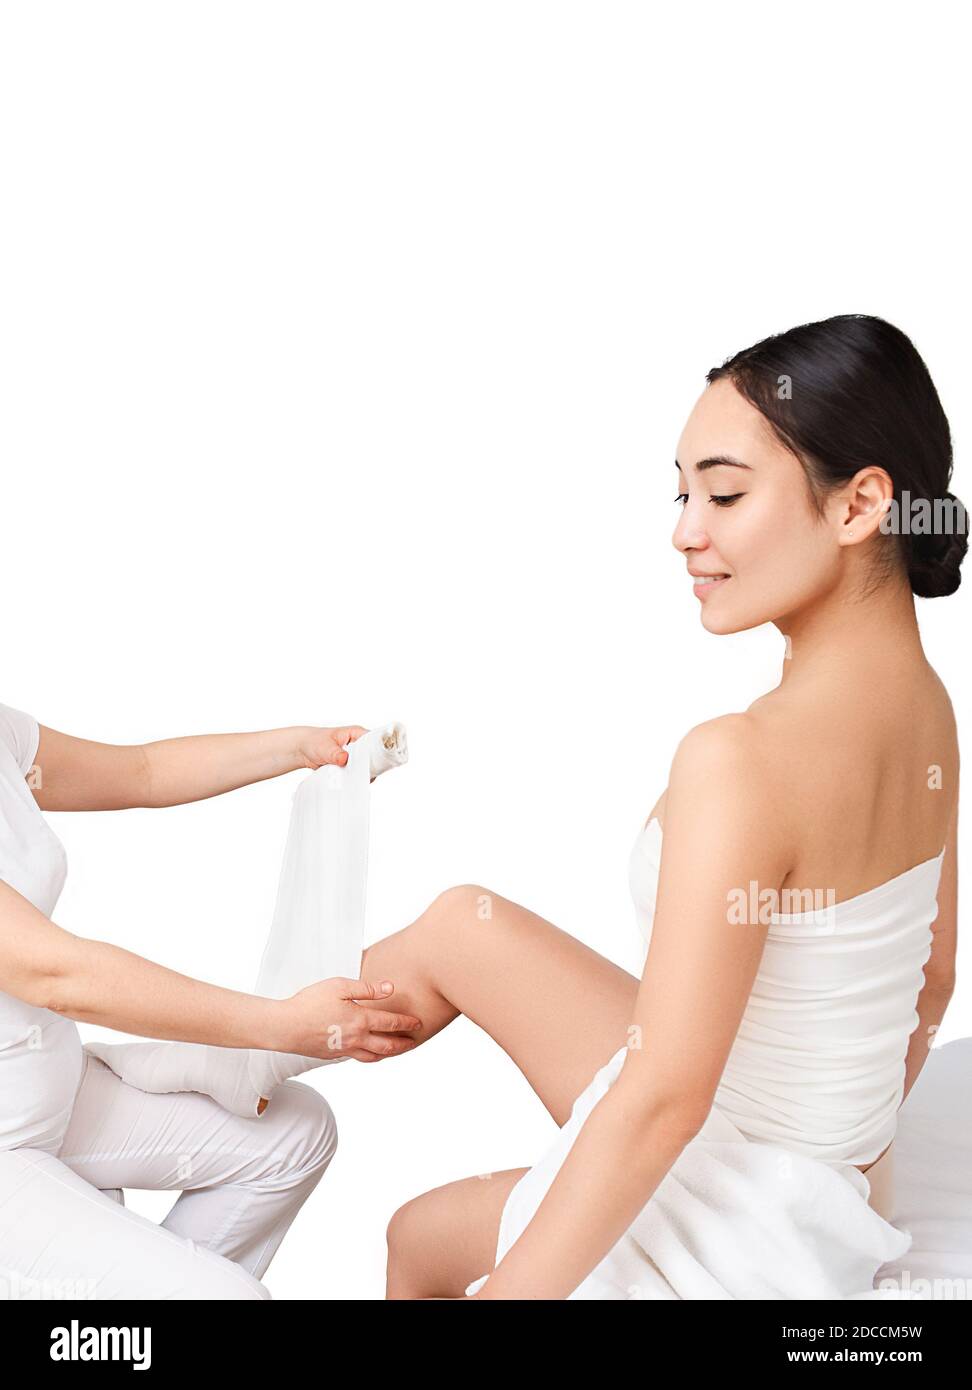 Asiatische Frau während der Beine, die mit Anti-Cellulite-Verband für Körper Schlankheitskur, isoliert auf weißem Hintergrund Stockfoto